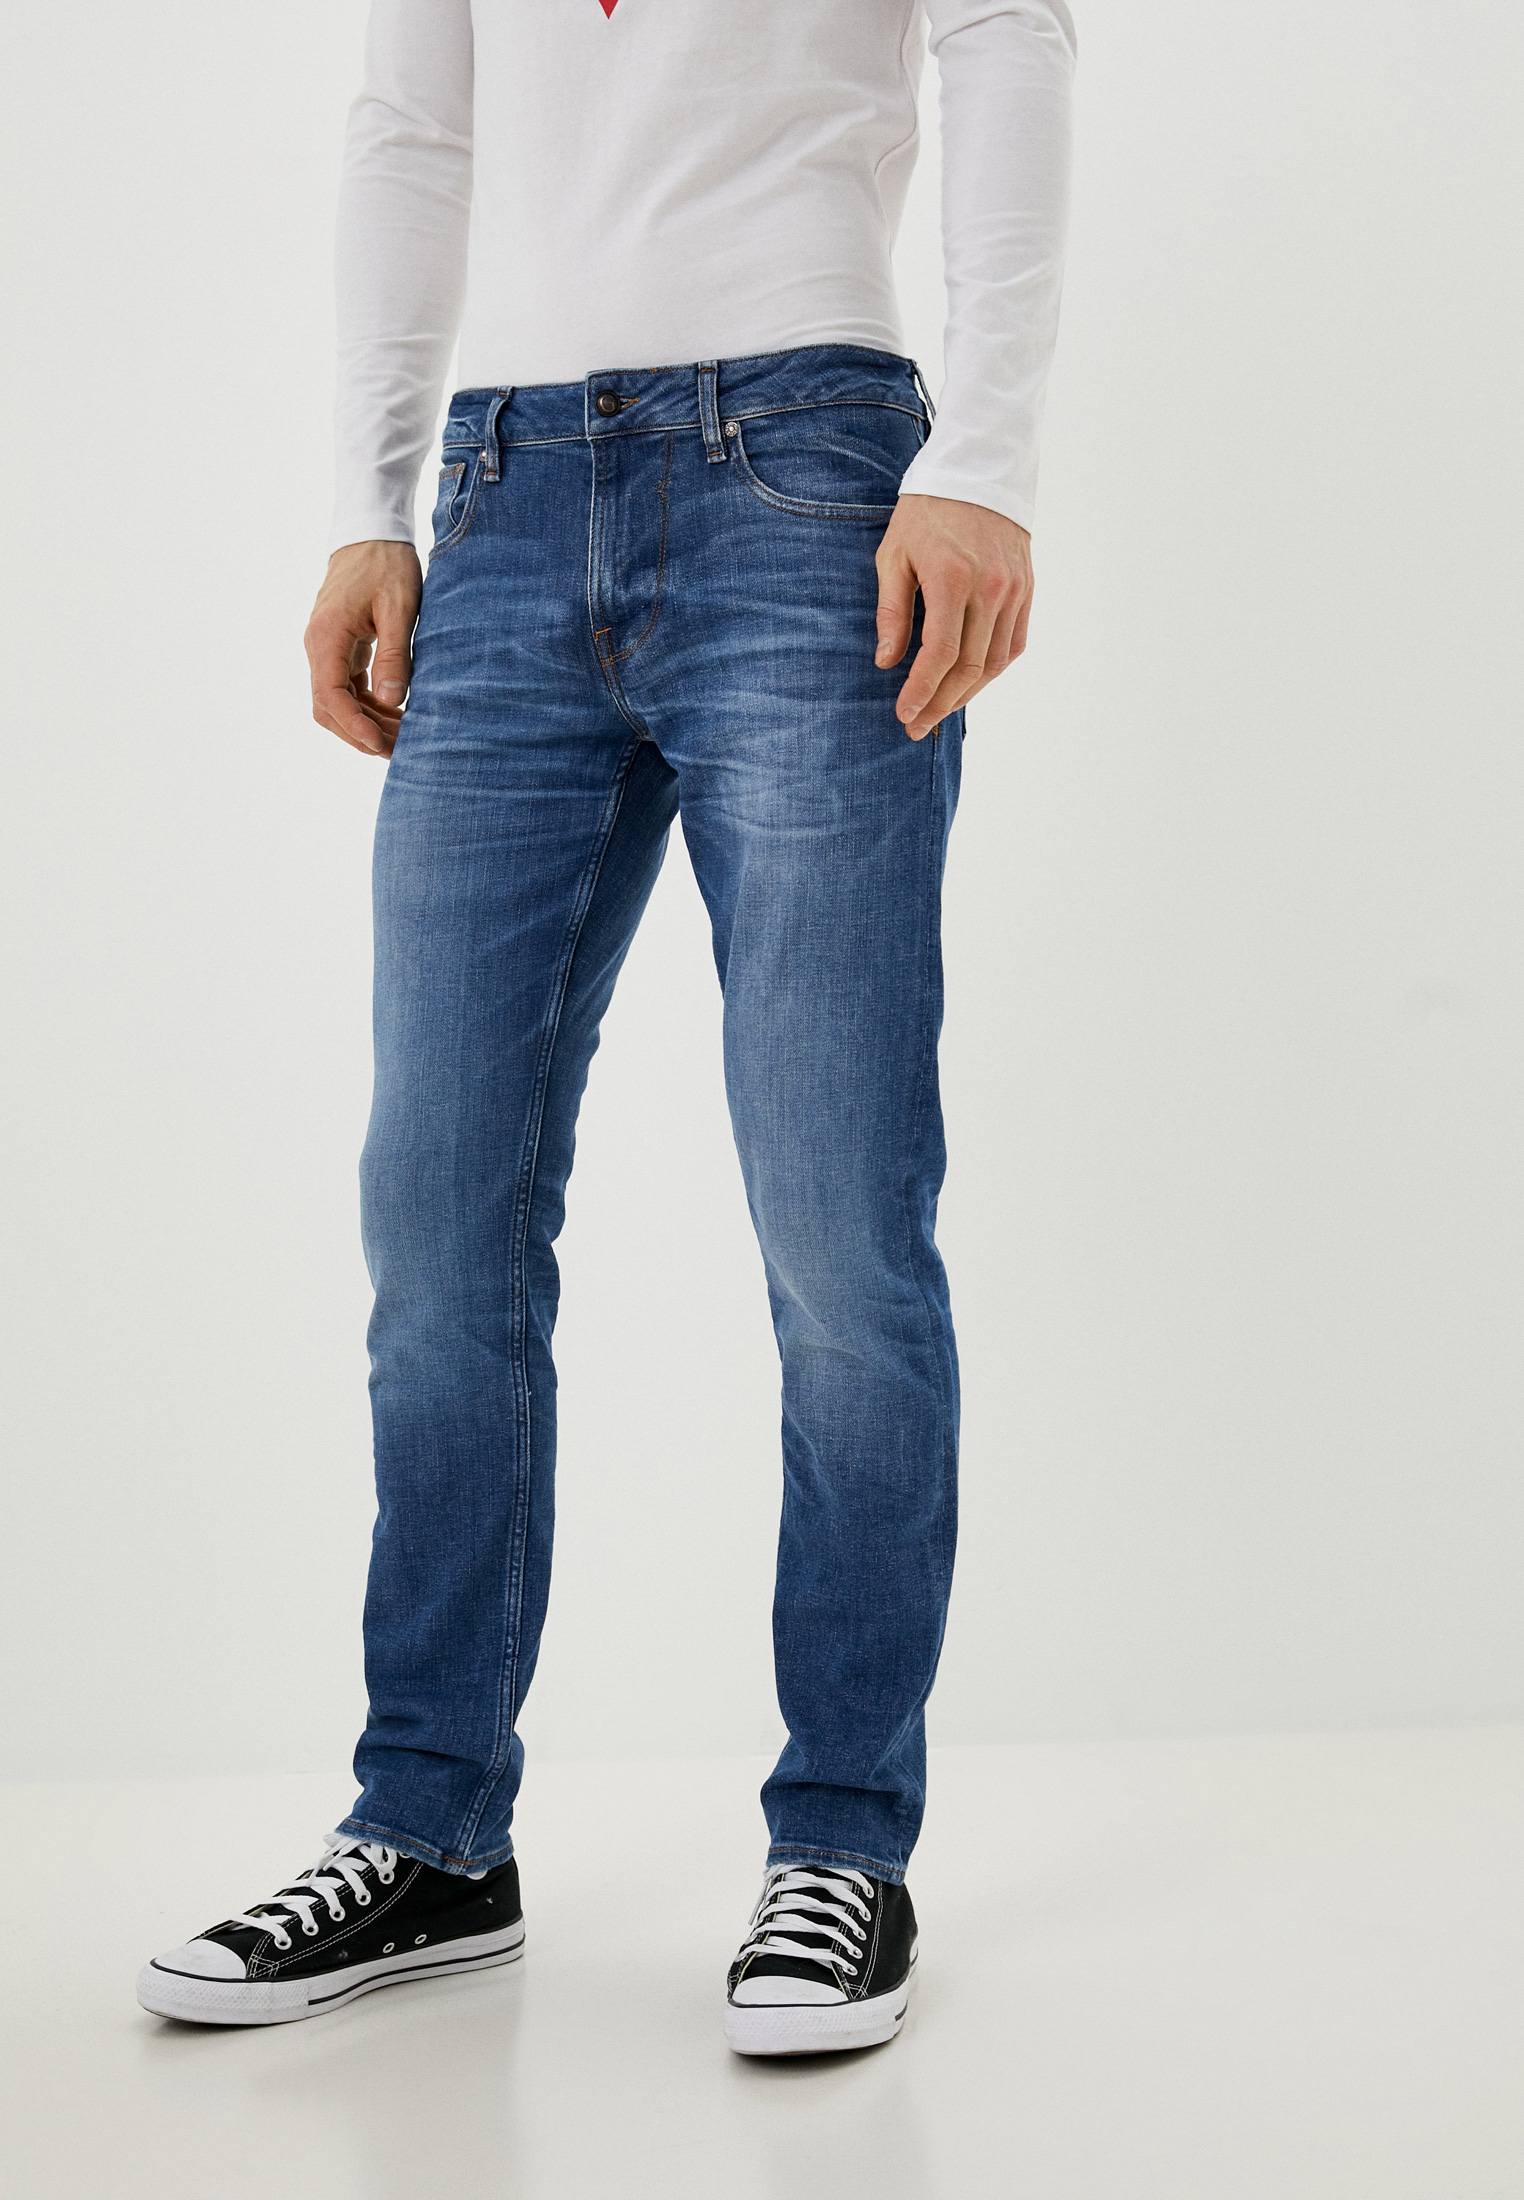 Джинсы Guess Jeans, цвет: синий, RTLAAZ073501 — купить в интернет-магазине Lamoda